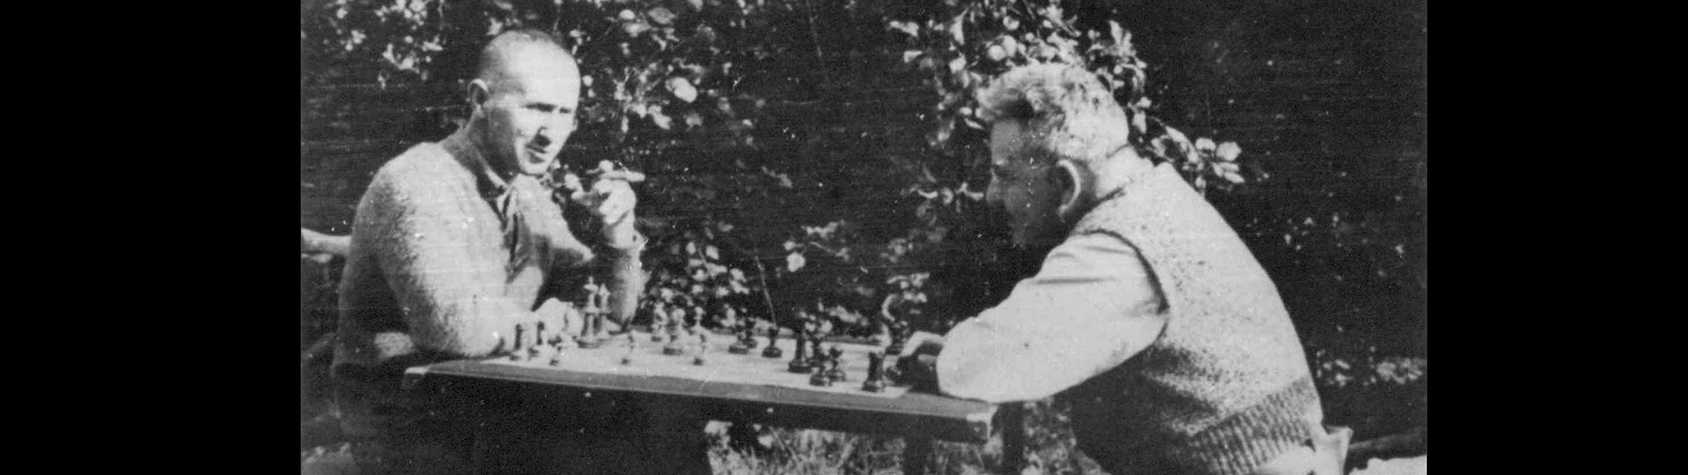 Bertold Brecht and Walter Benjamin playing chess, 1934, Denmark © Akademie der Künste, Berlin, Bertolt Brecht Archiv